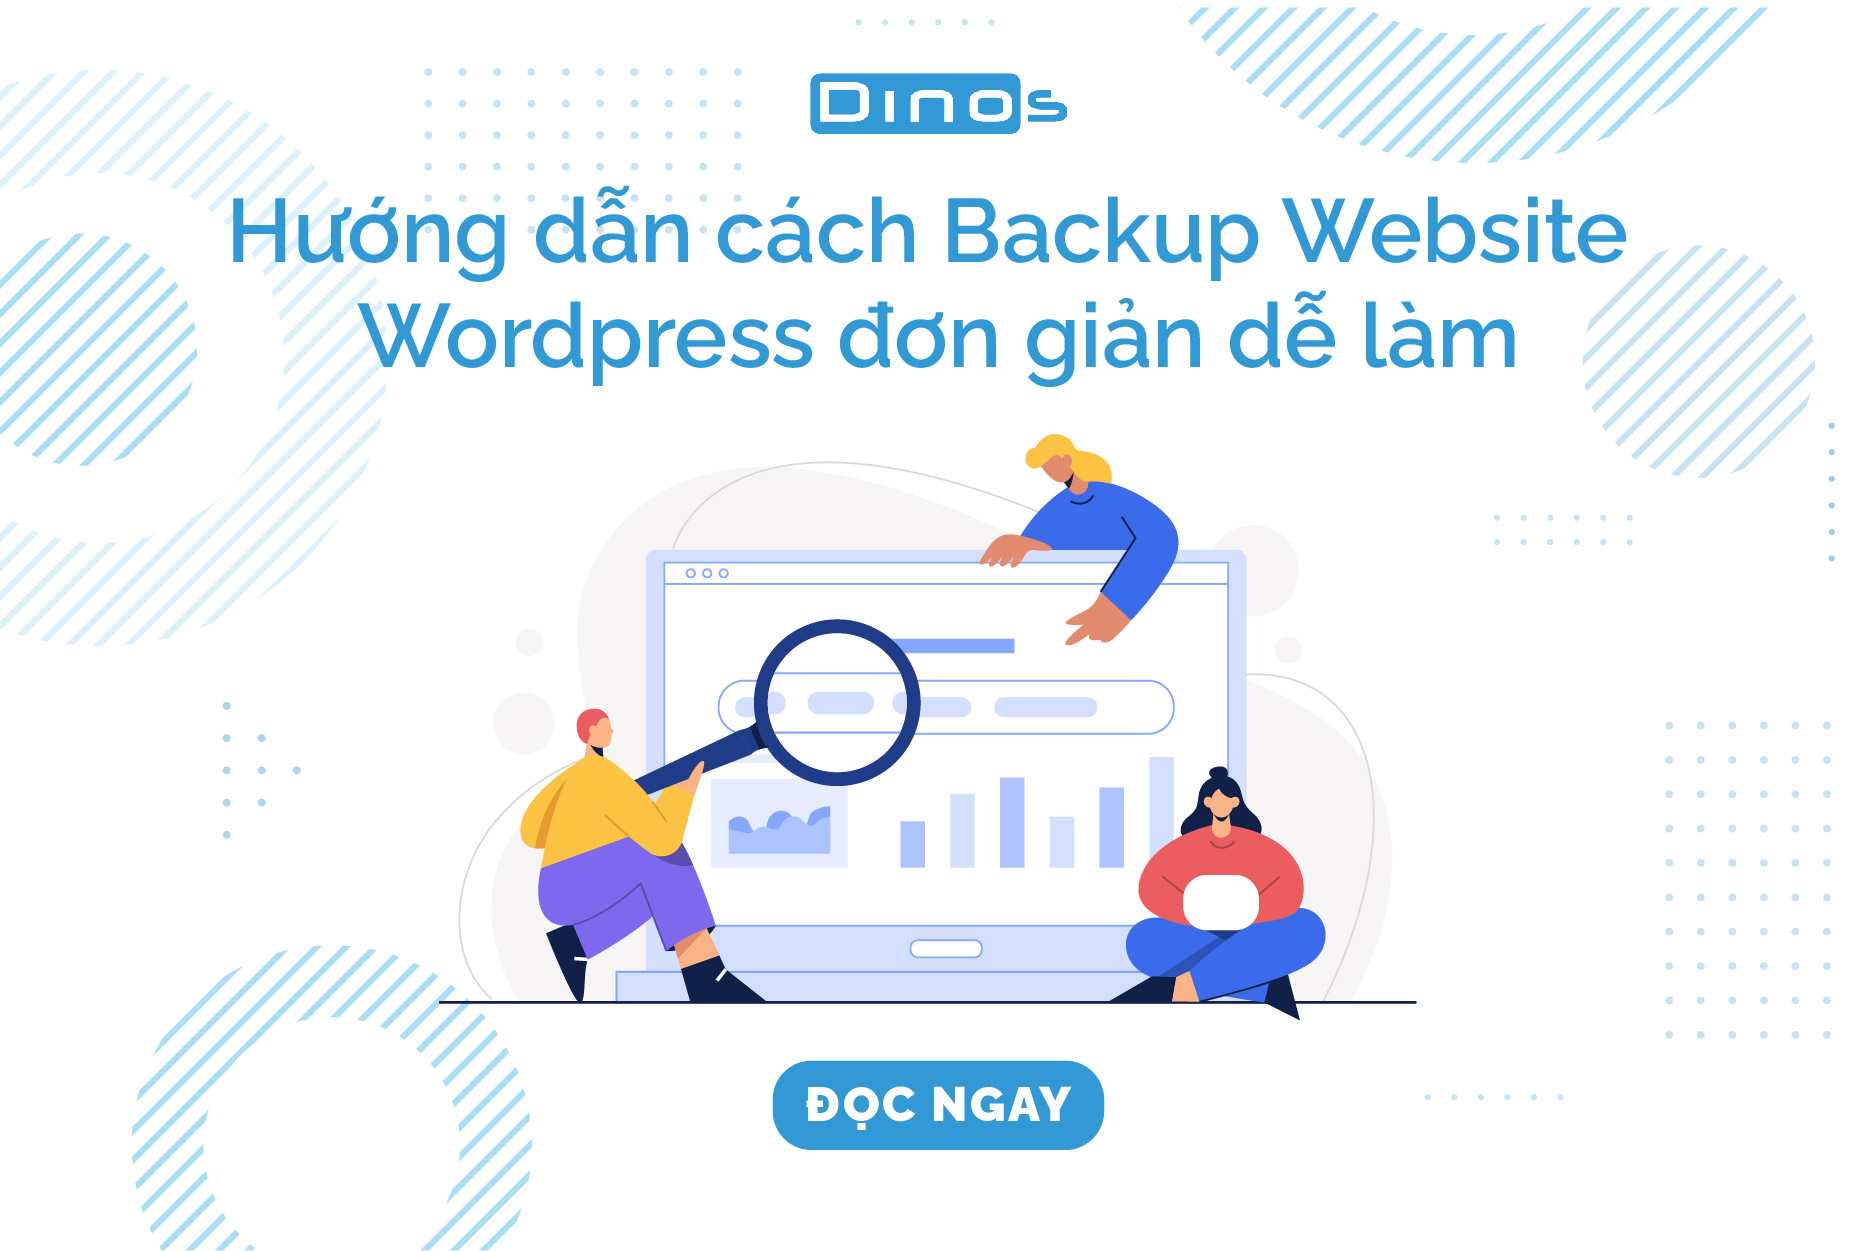 Hướng dẫn cách Backup Website WordPress đơn giản dễ làm